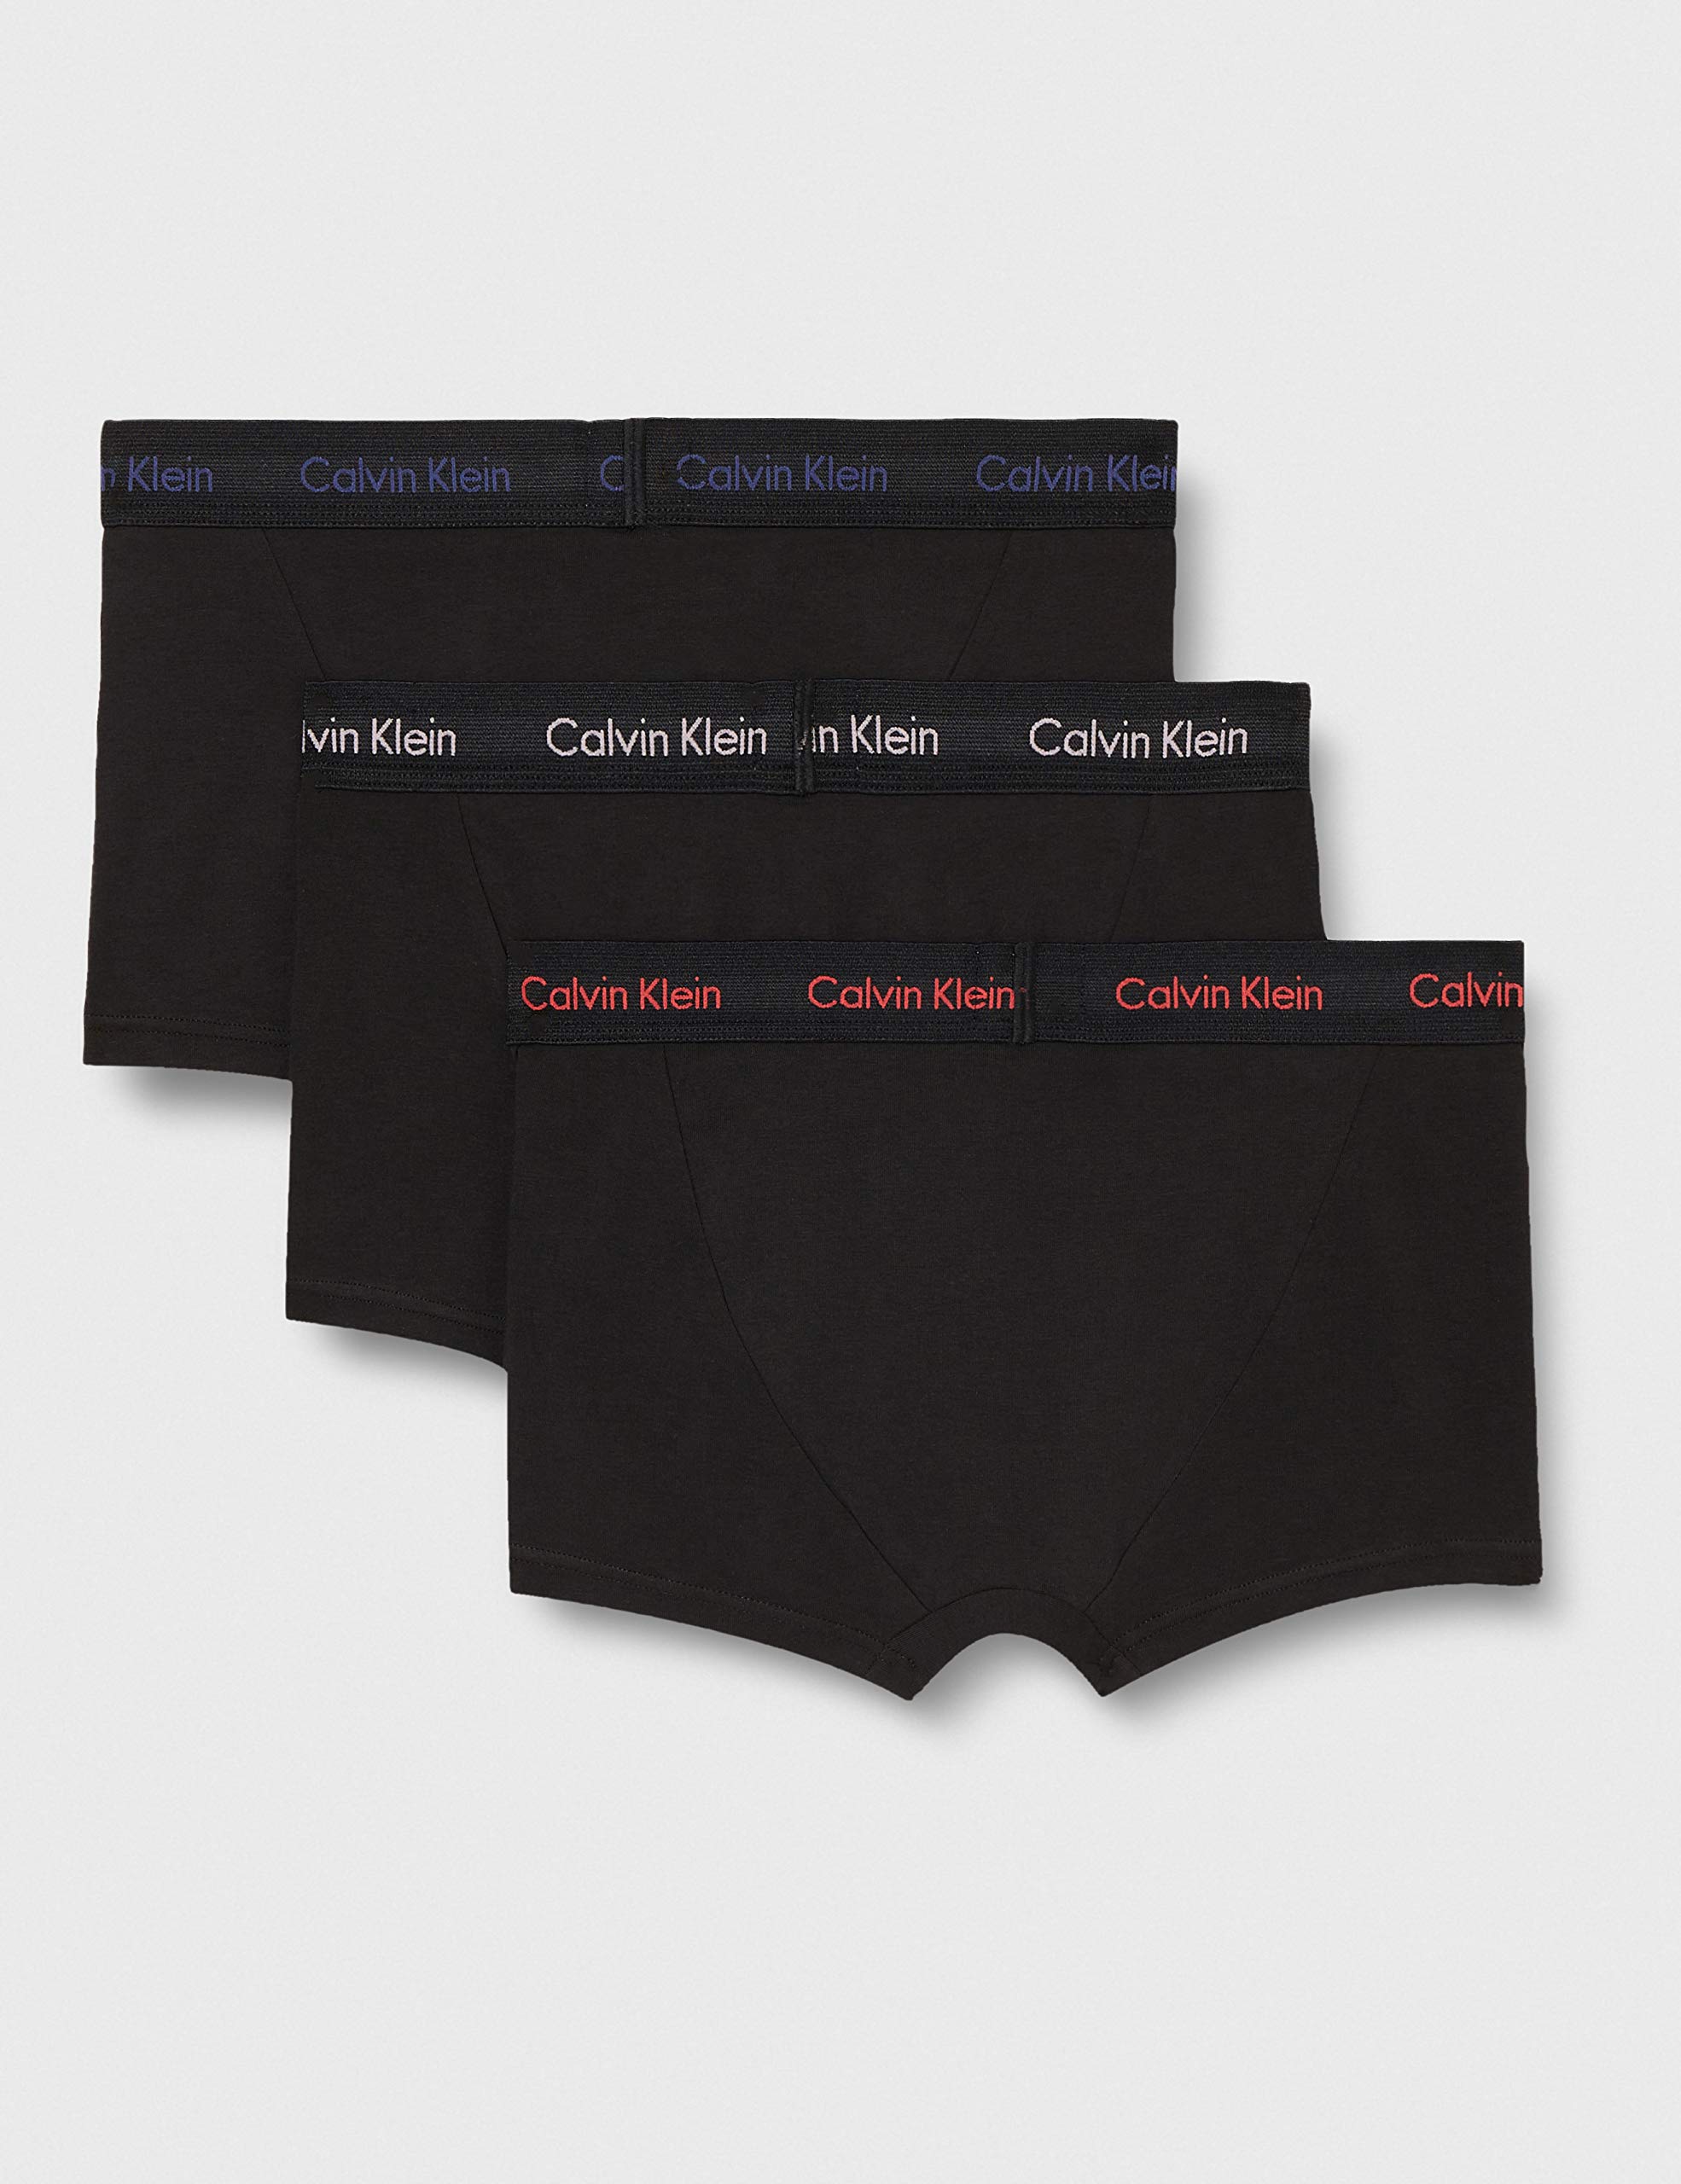 Calvin Klein Men's 3 Pack Low Rise Trunks